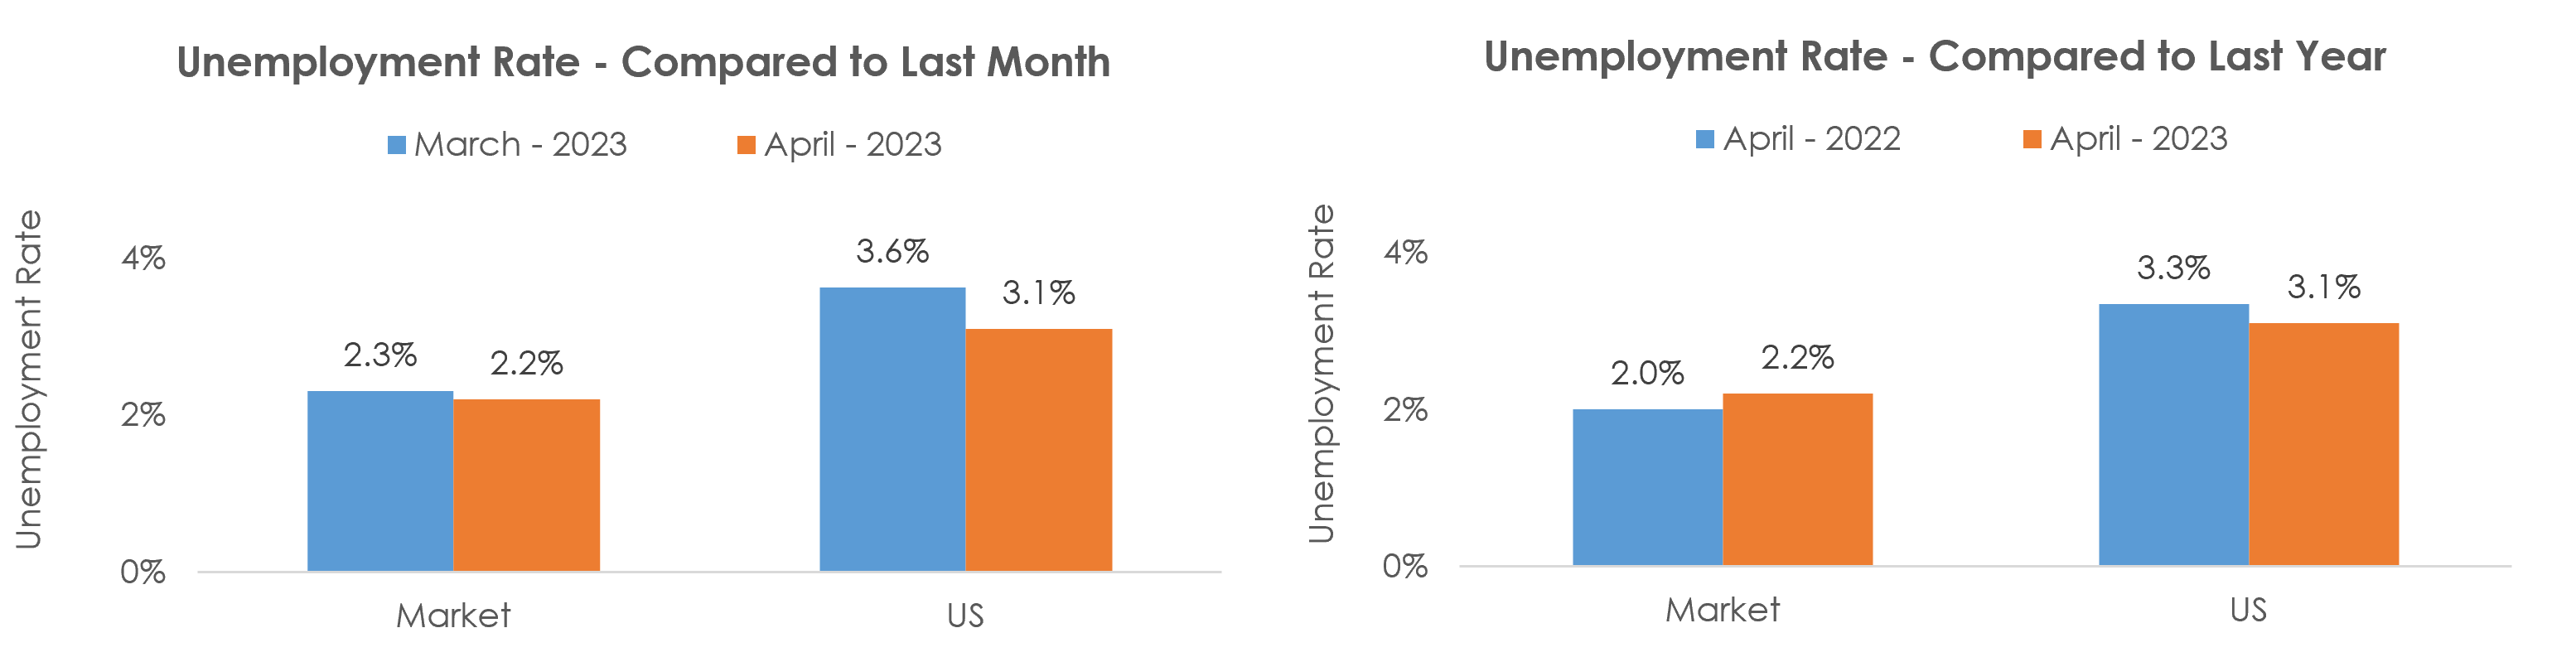 Provo-Orem, UT Unemployment April 2023